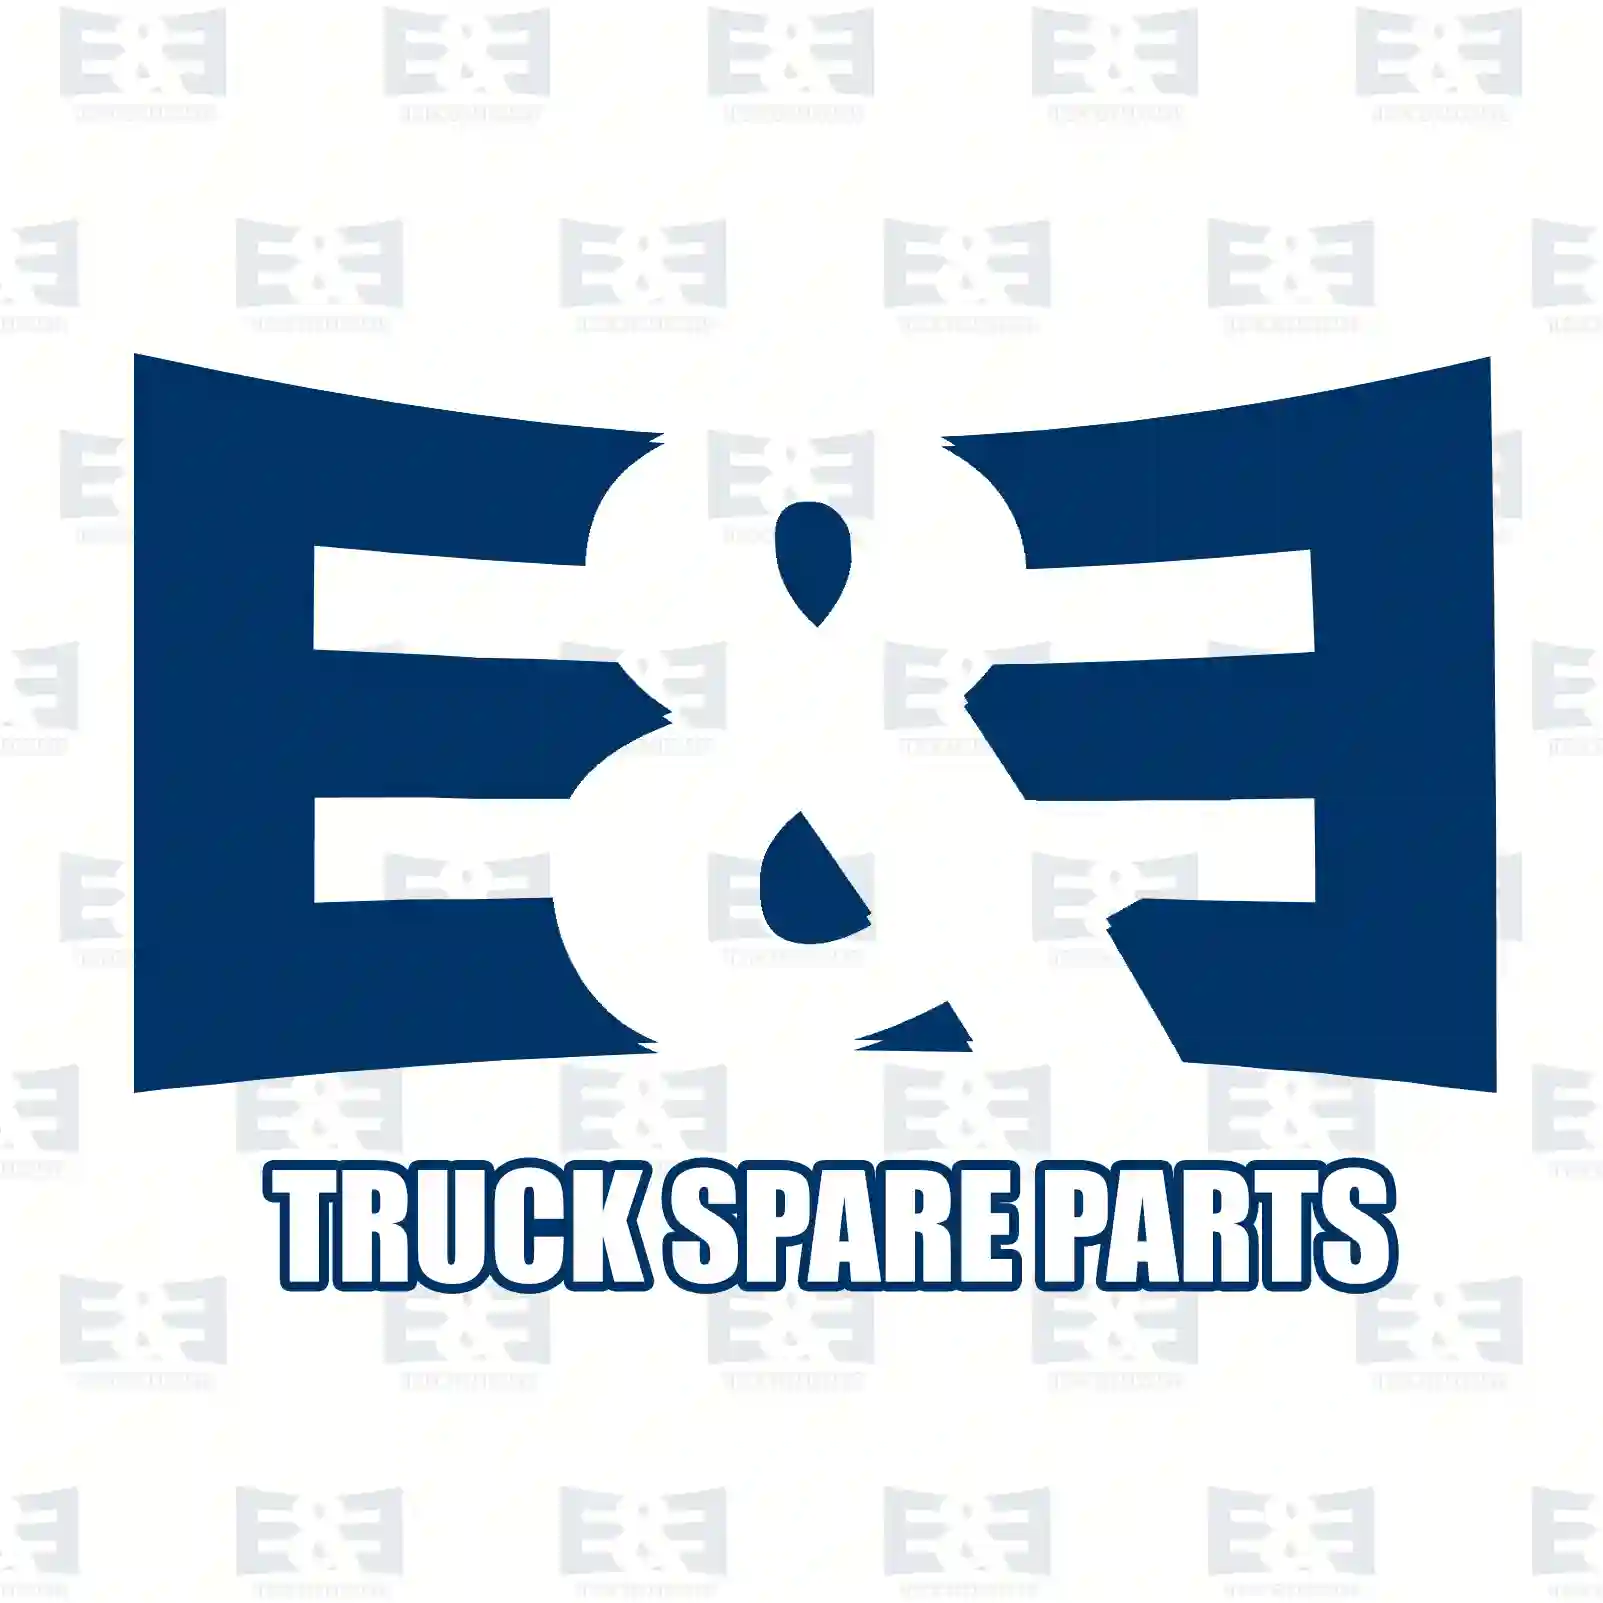 Brake disc, 2E2296259, 9054210012, 9054210112, 905421011207, , , , , , , ||  2E2296259 E&E Truck Spare Parts | Truck Spare Parts, Auotomotive Spare Parts Brake disc, 2E2296259, 9054210012, 9054210112, 905421011207, , , , , , , ||  2E2296259 E&E Truck Spare Parts | Truck Spare Parts, Auotomotive Spare Parts